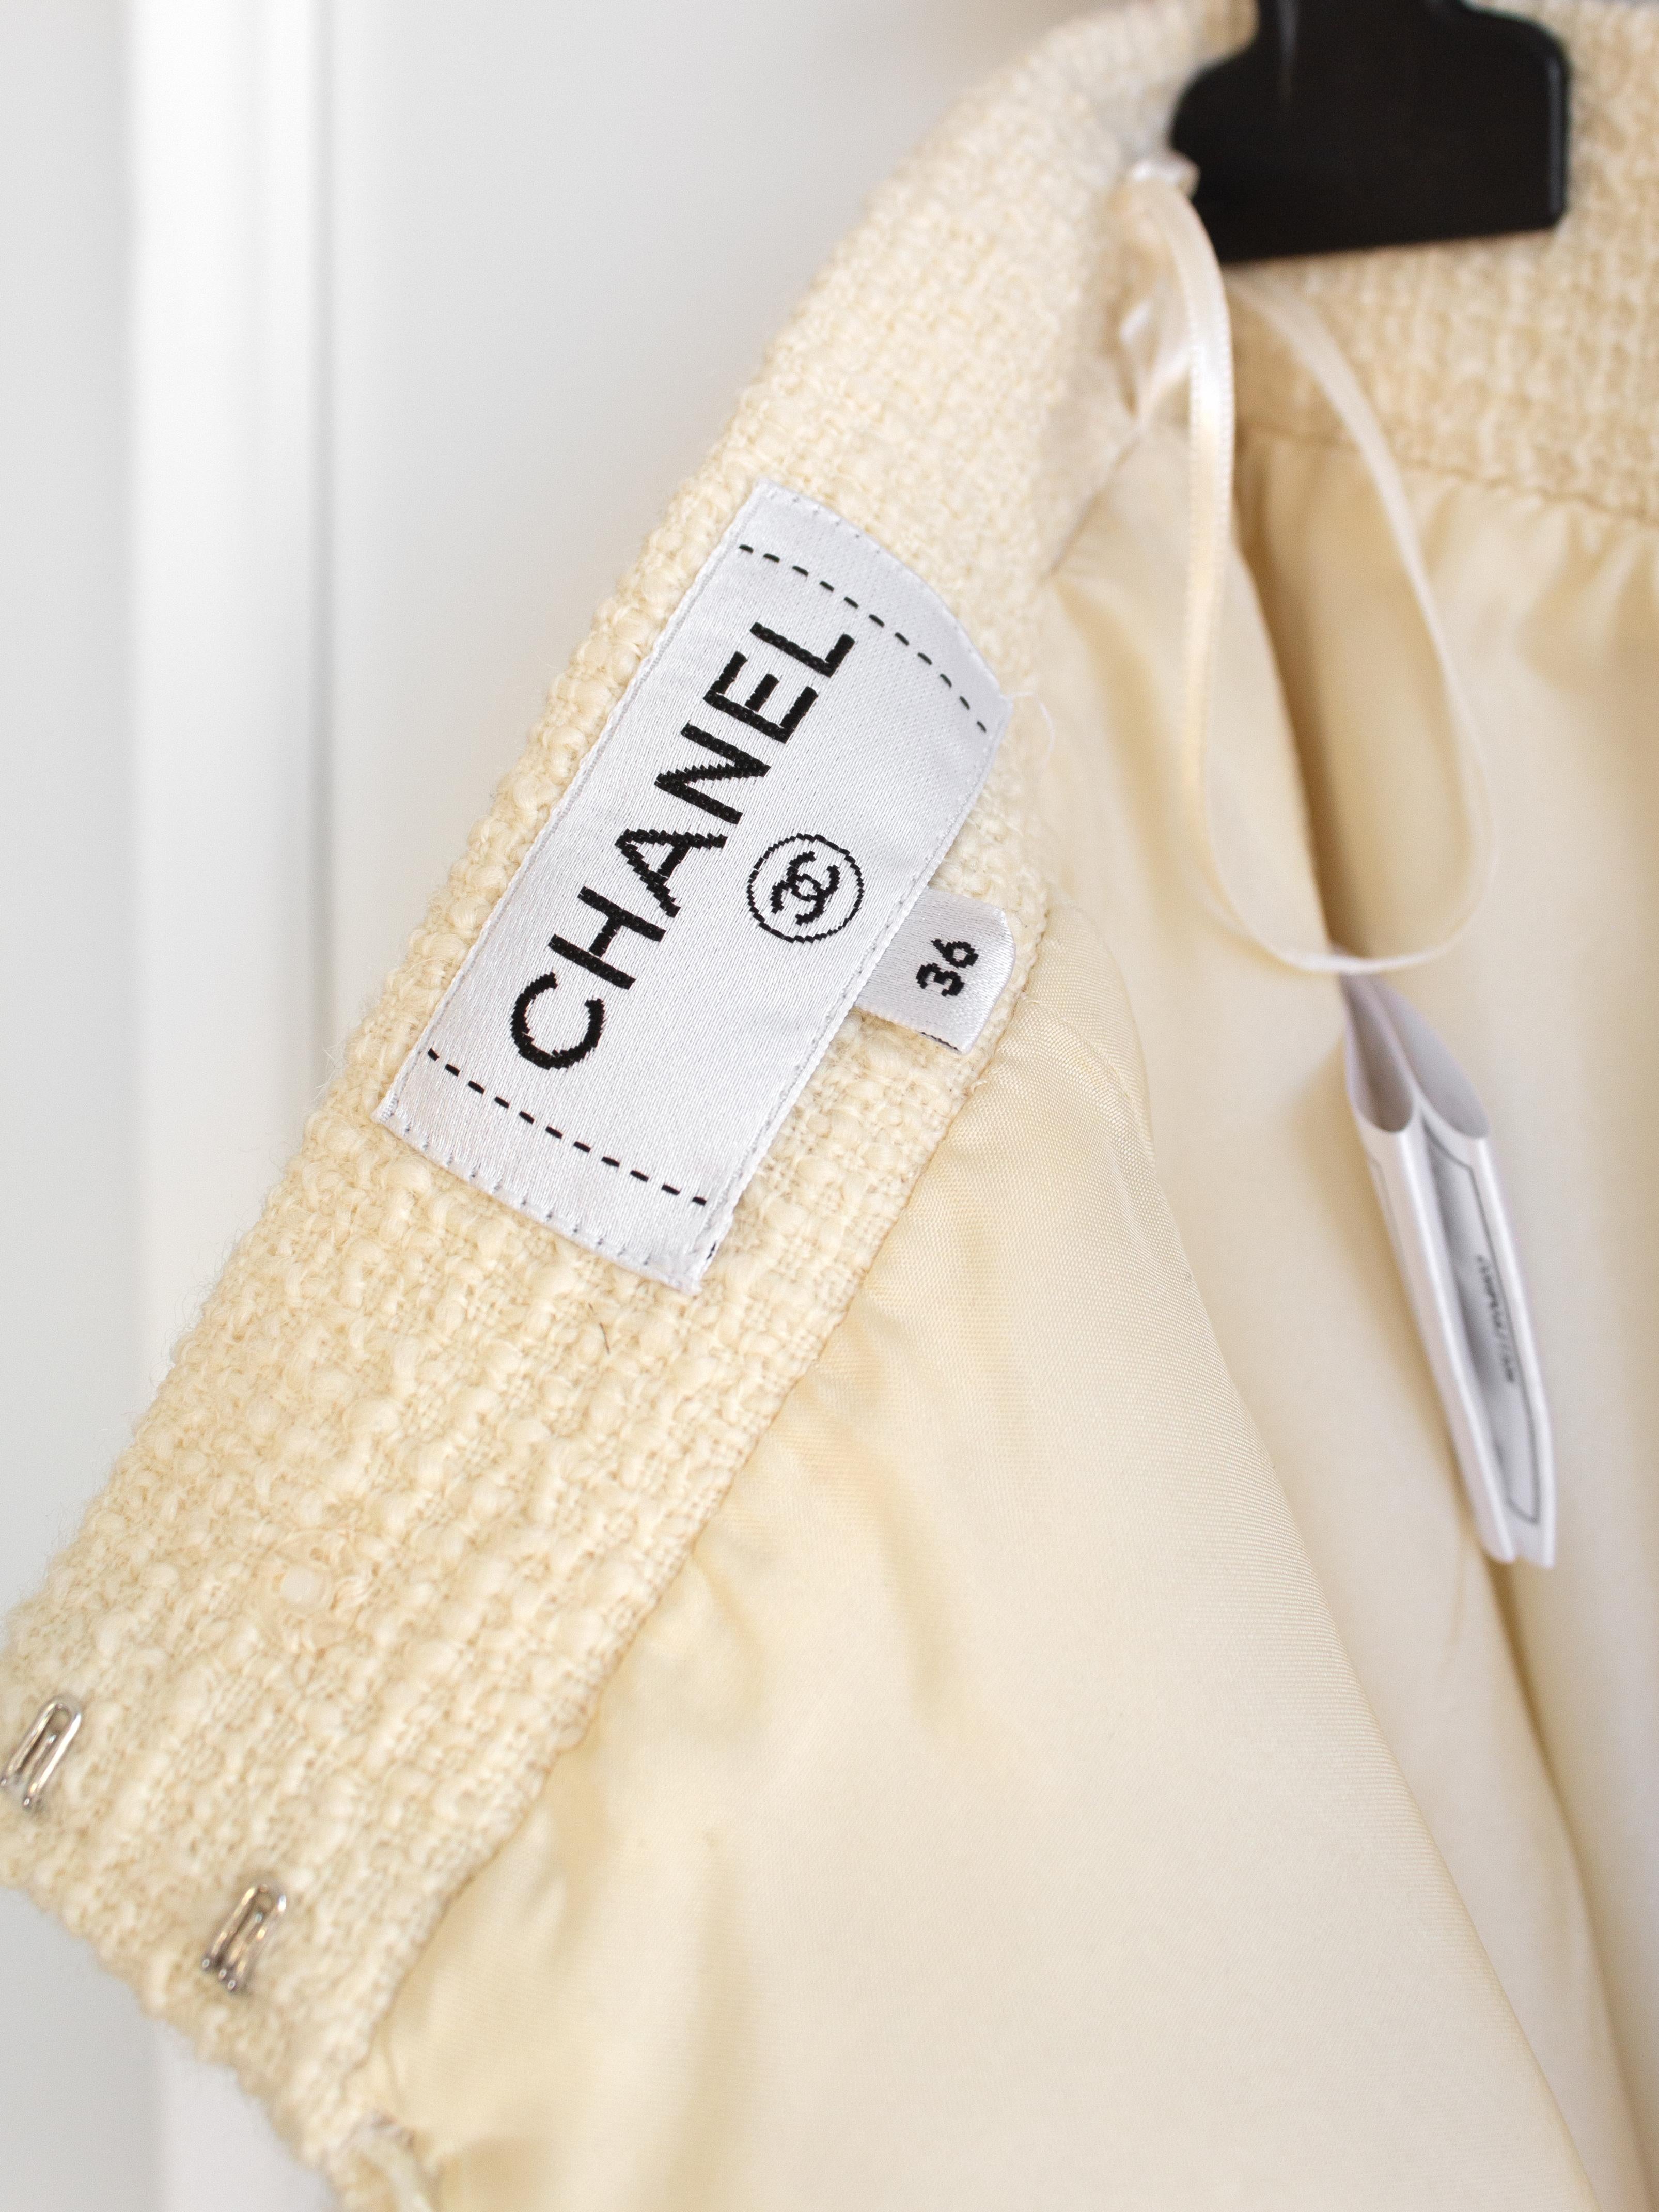 Tailleur jupe et veste crème écrue Metiers D'Art Ritz 17A Chanel, pré-automne 2017 en vente 13